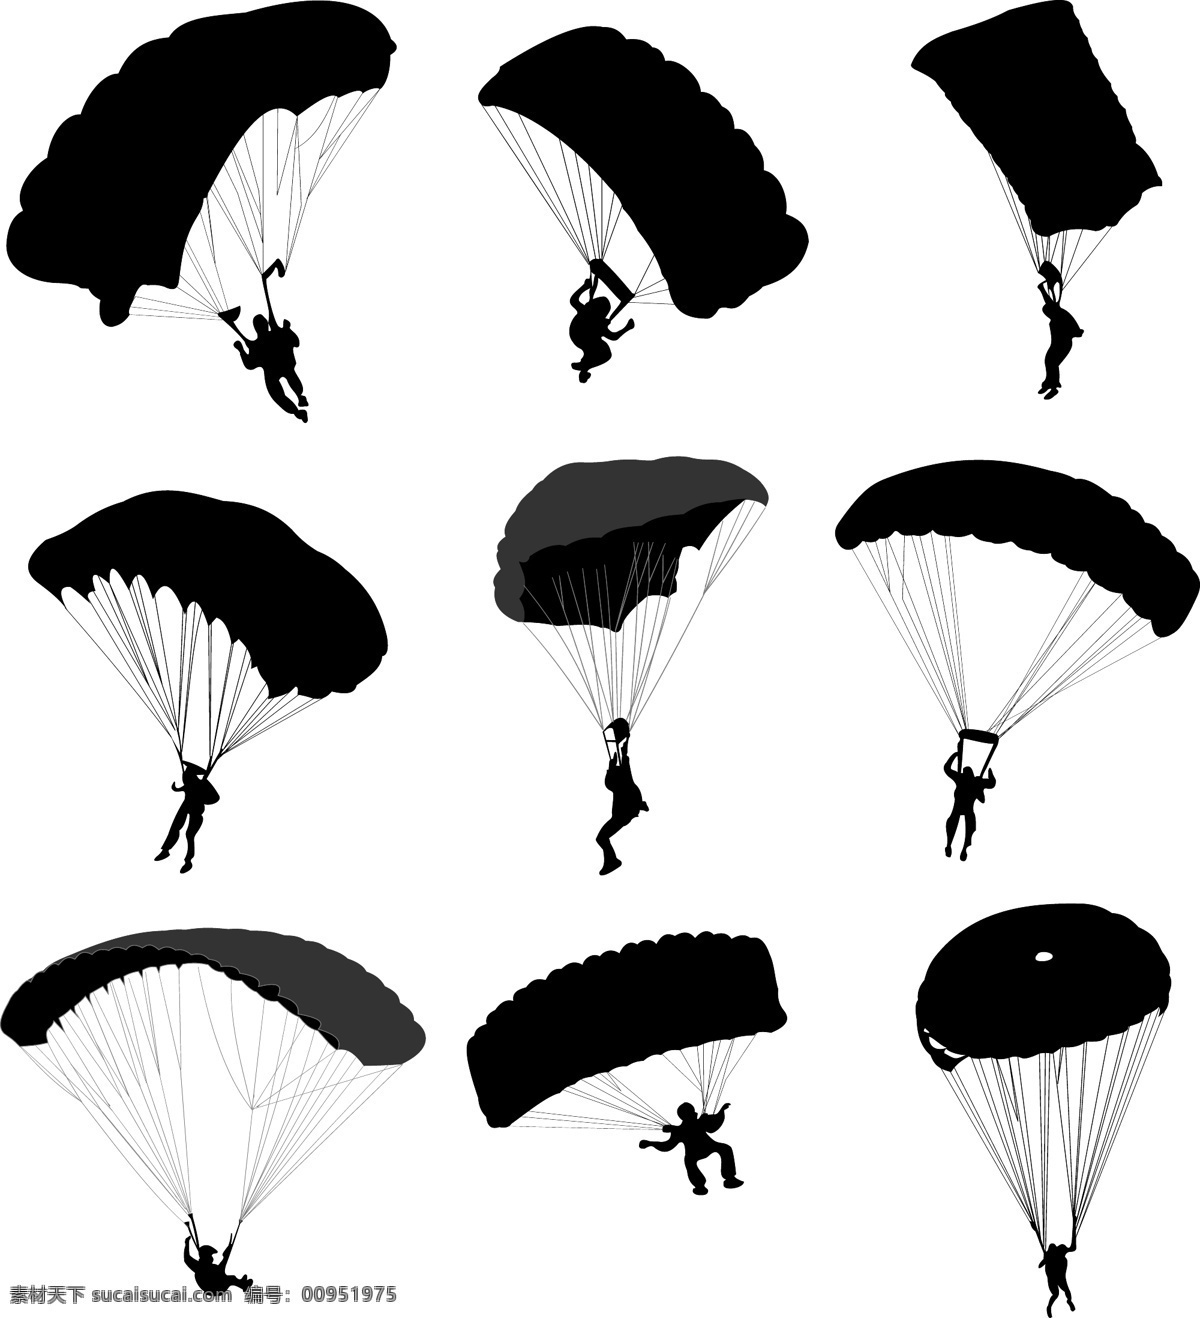 跳伞 剪影 人物主题 日常生活 矢量人物 手绘 矢量 模板下载 跳伞剪影 psd源文件